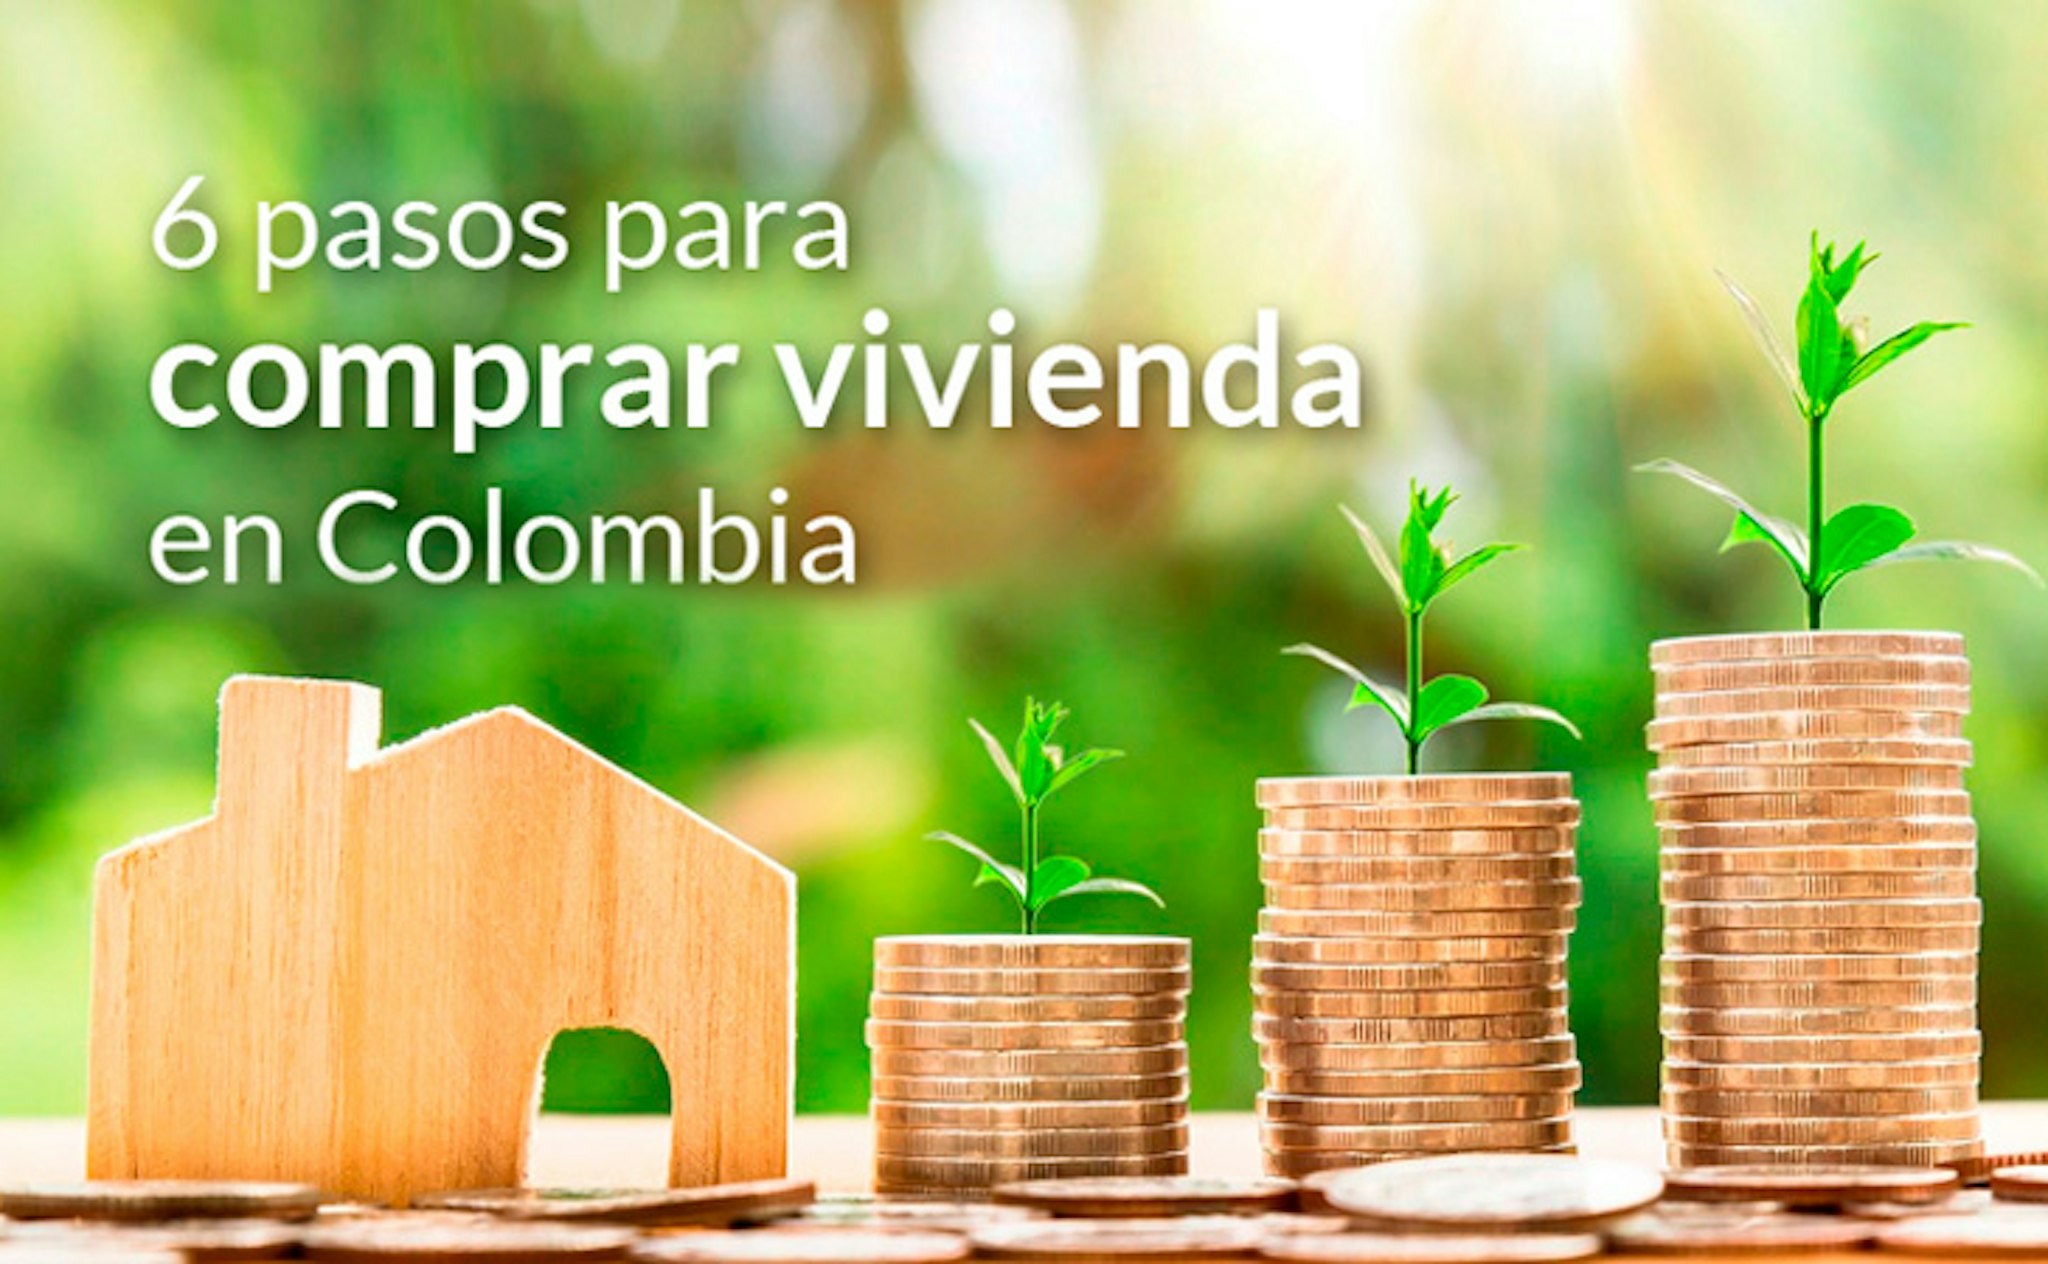 Image 6 pasos para comprar vivienda en Colombia